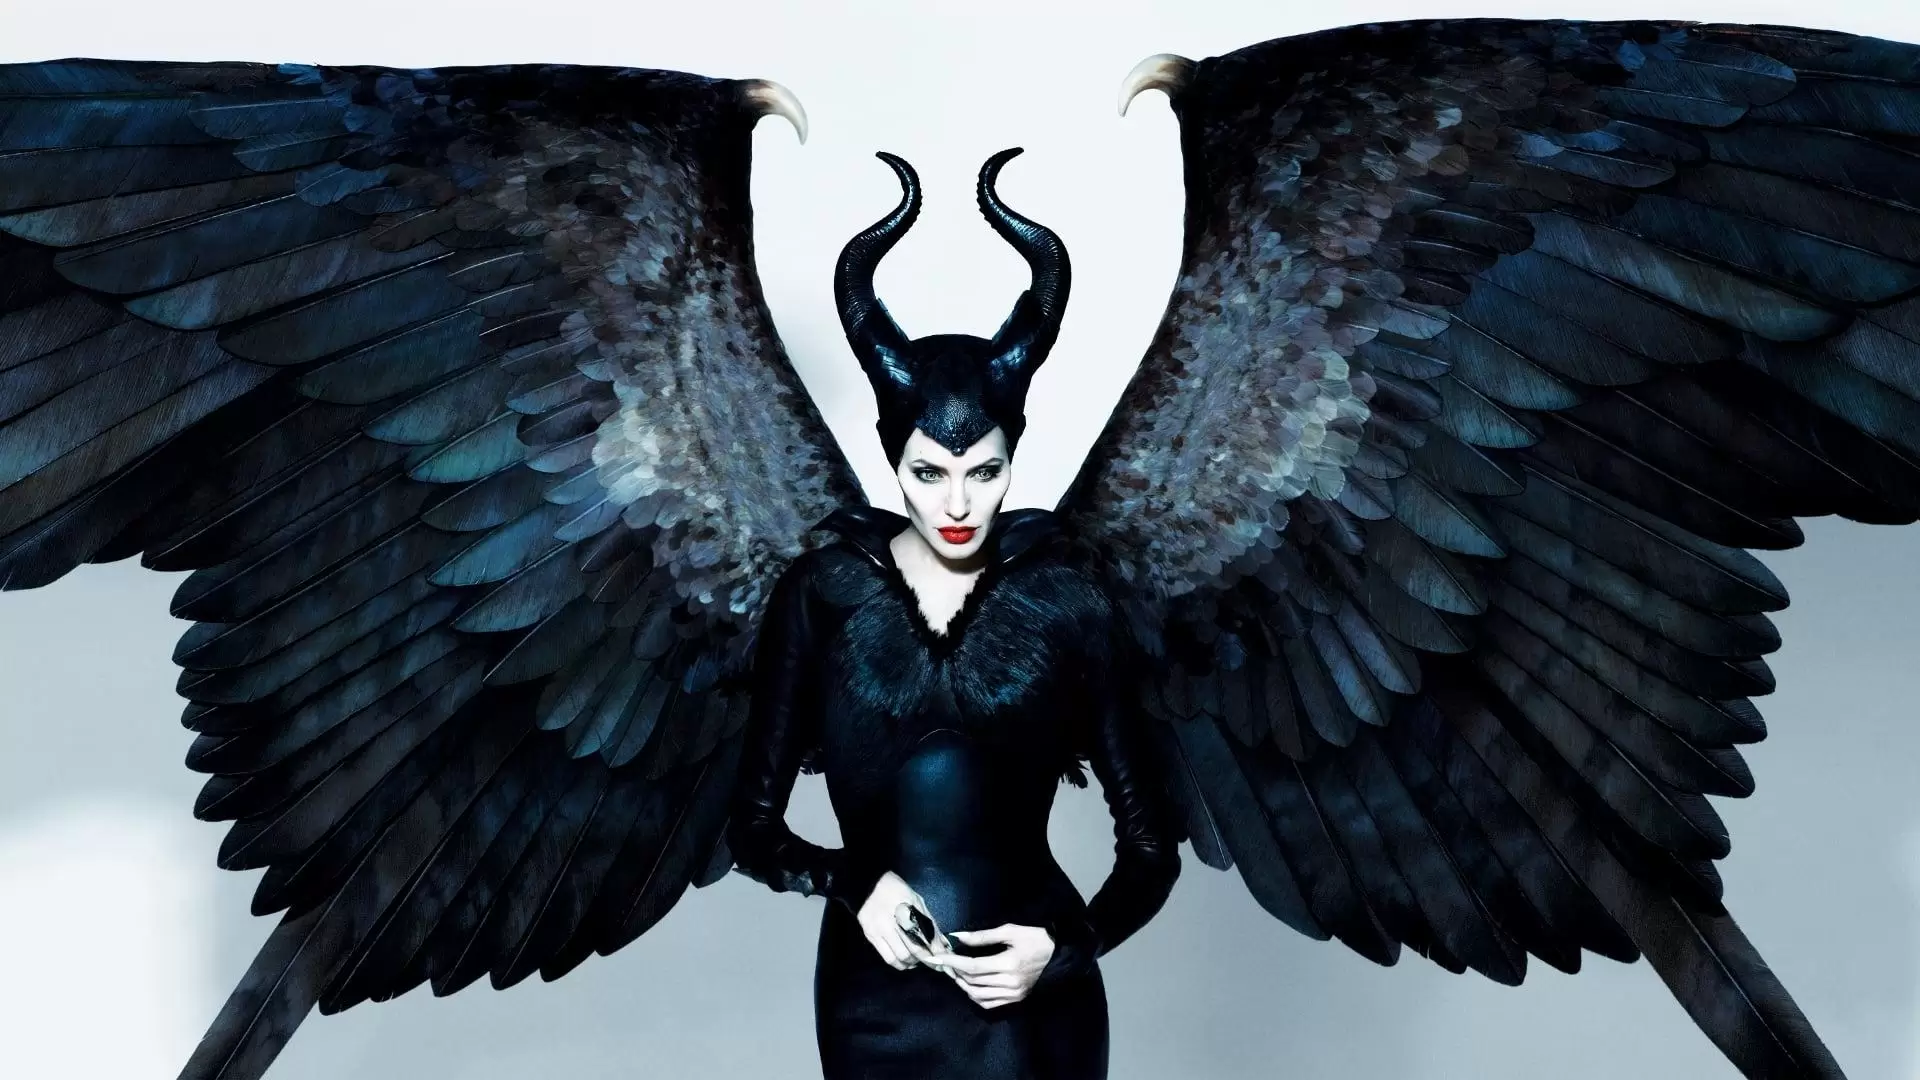 دانلود فیلم Maleficent 2014 (مالیفیسنت) با زیرنویس فارسی و تماشای آنلاین